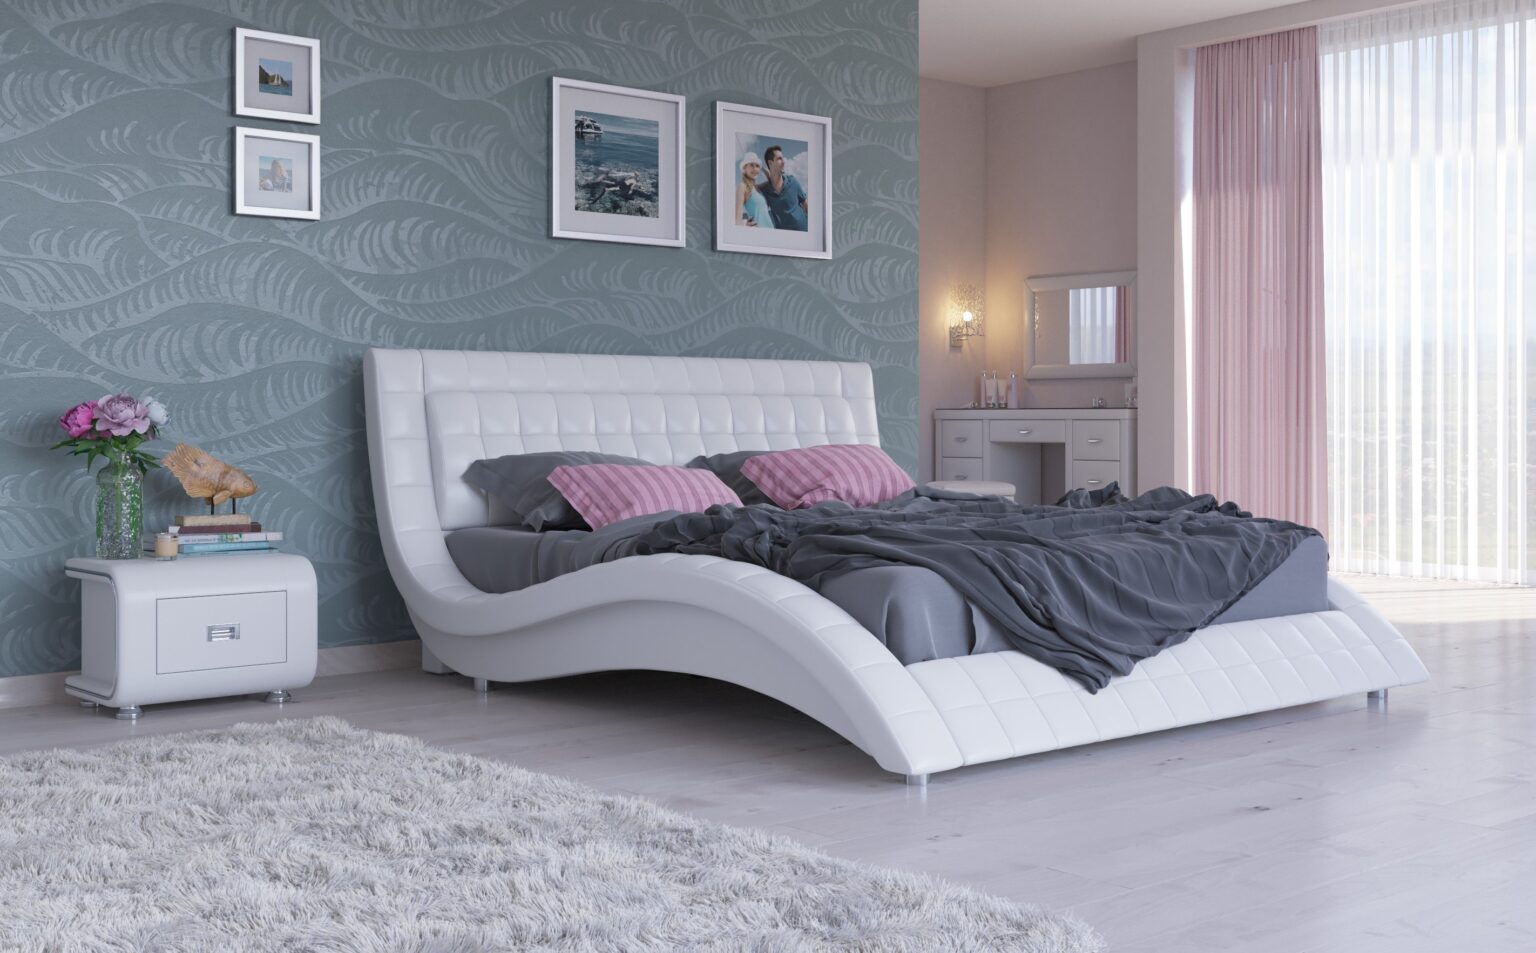 Двуспальная кровать: размеры, стандарты длины, ширины и высоты .